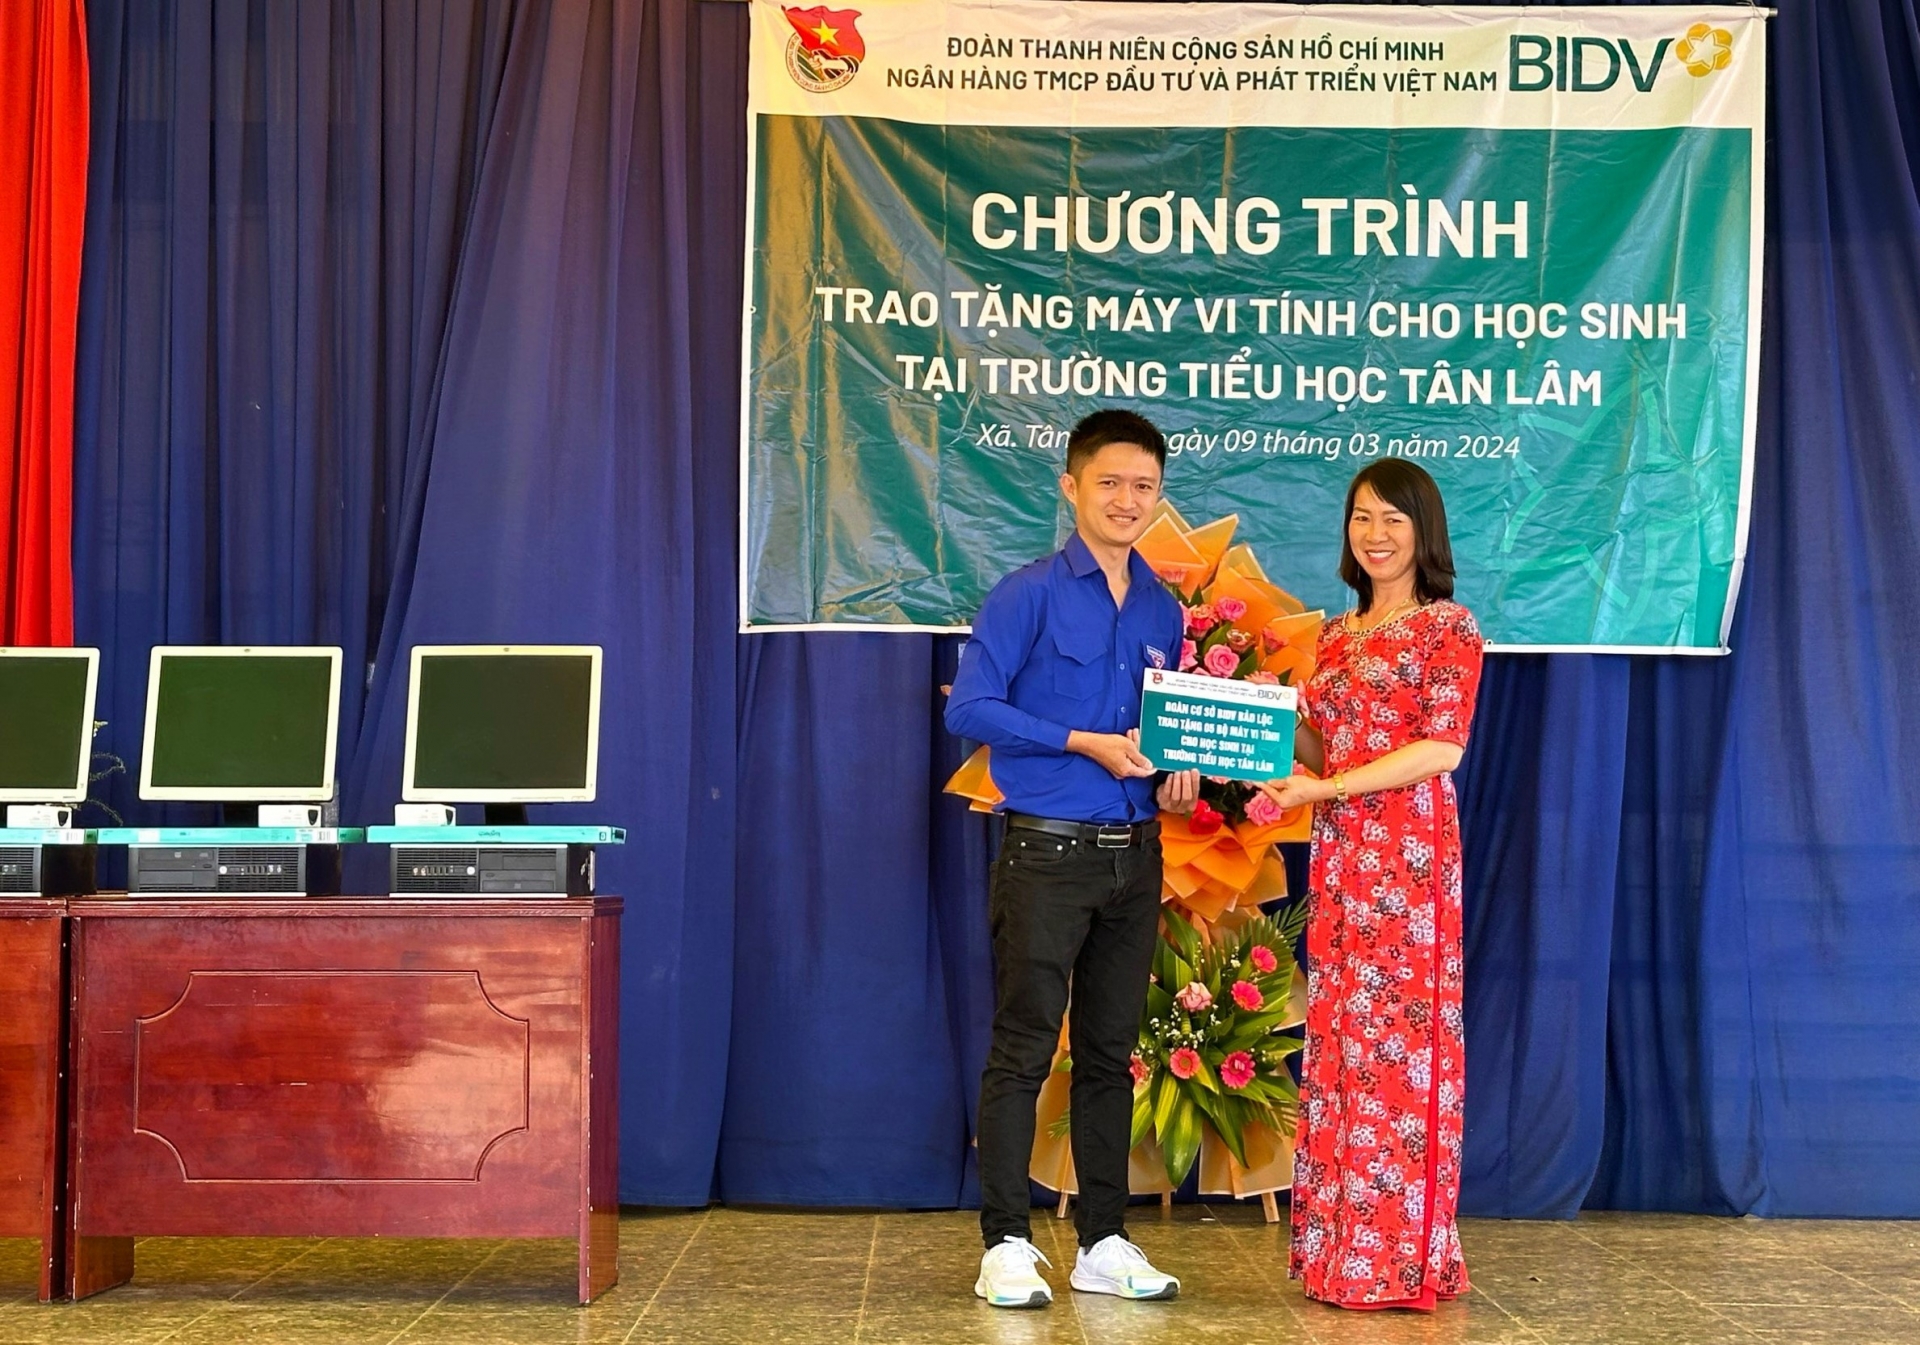 Đoàn thanh niên BIDV Bảo Lộc trao tặng máy tính cho học sinh trường Tiểu học Tân Lâm (Di Linh)